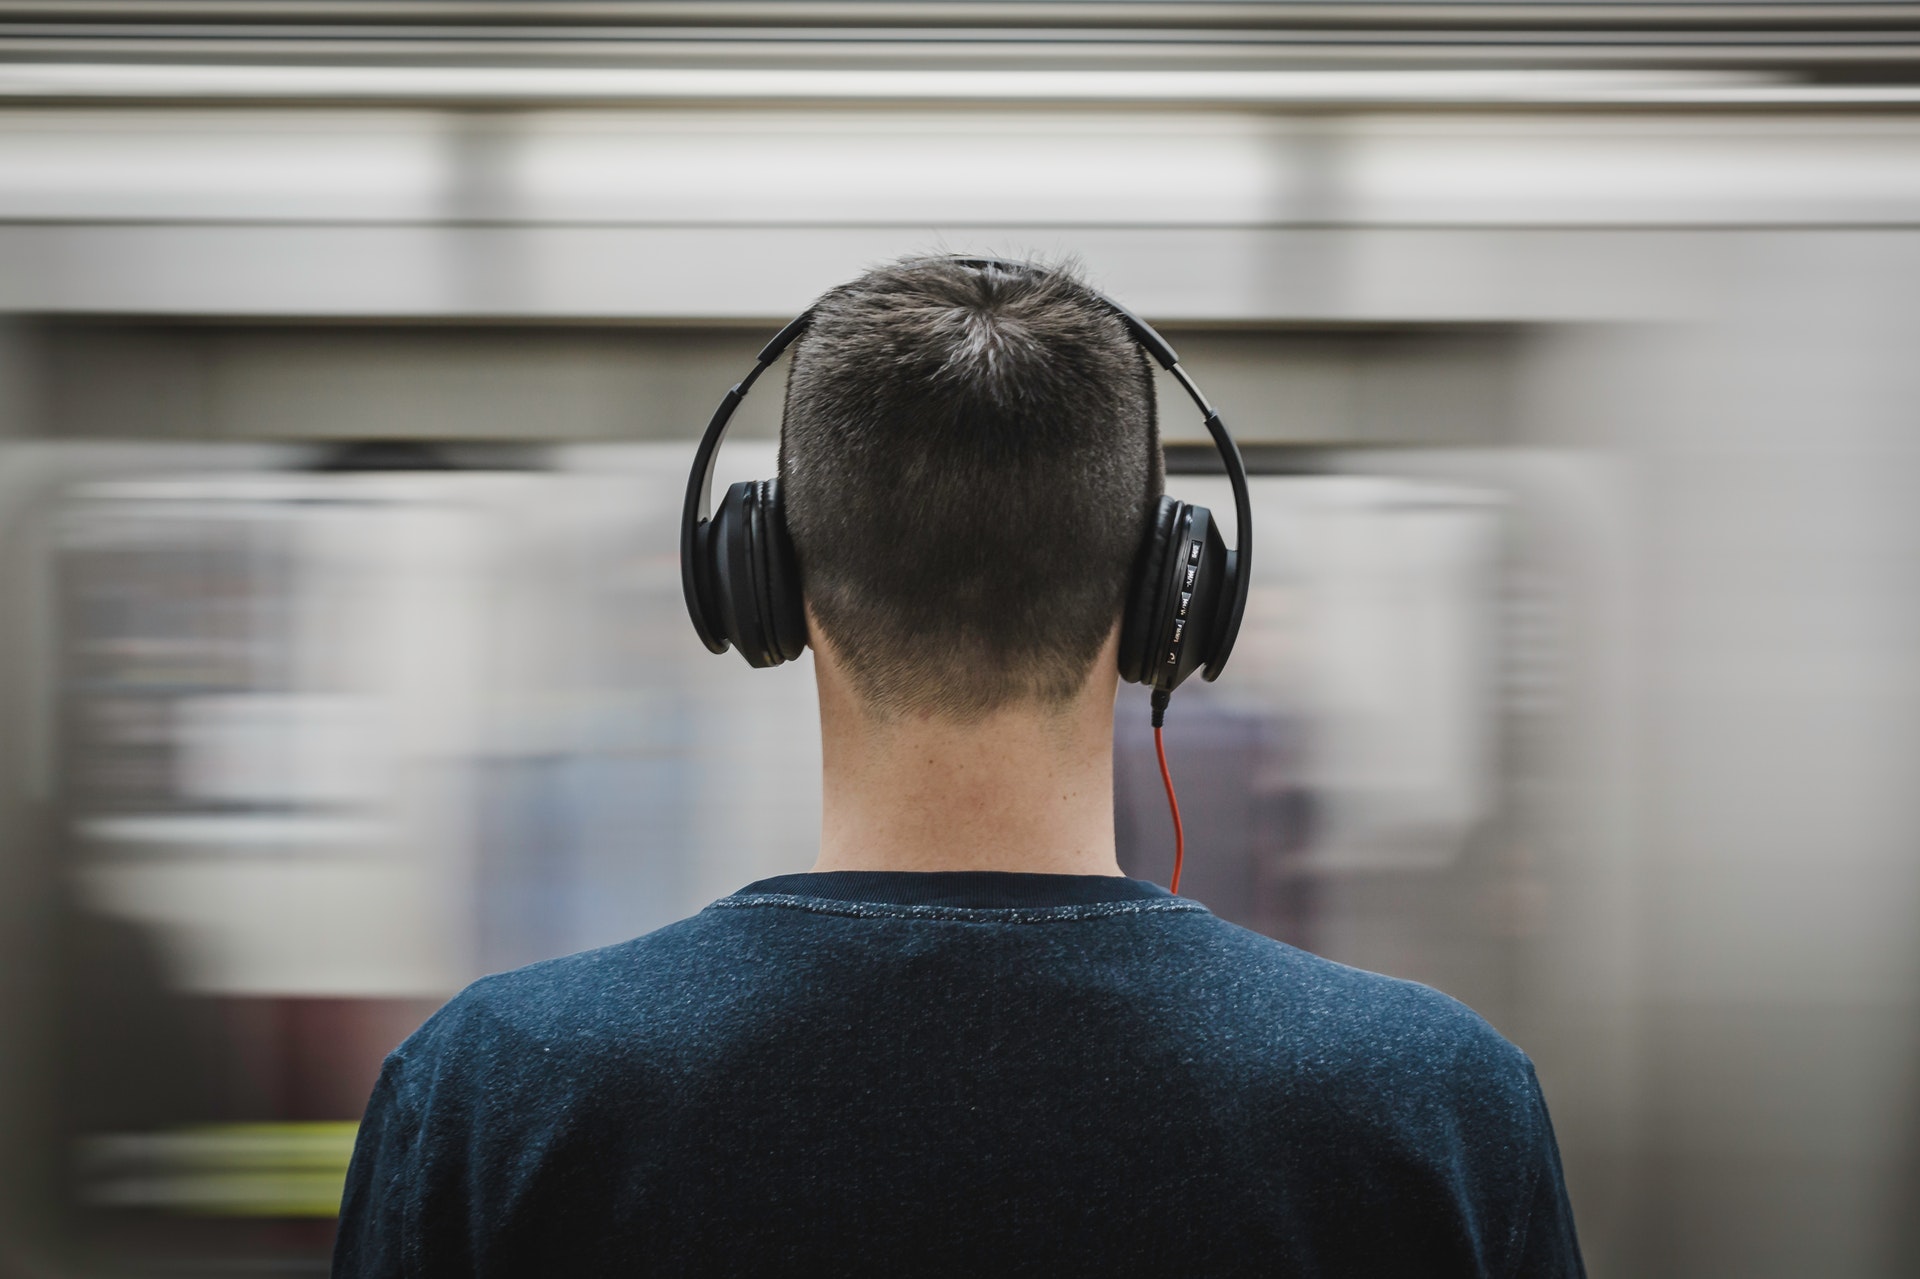 Kopfhörer liefern je nach Form und Technik des Gerätes einen anderen Klang